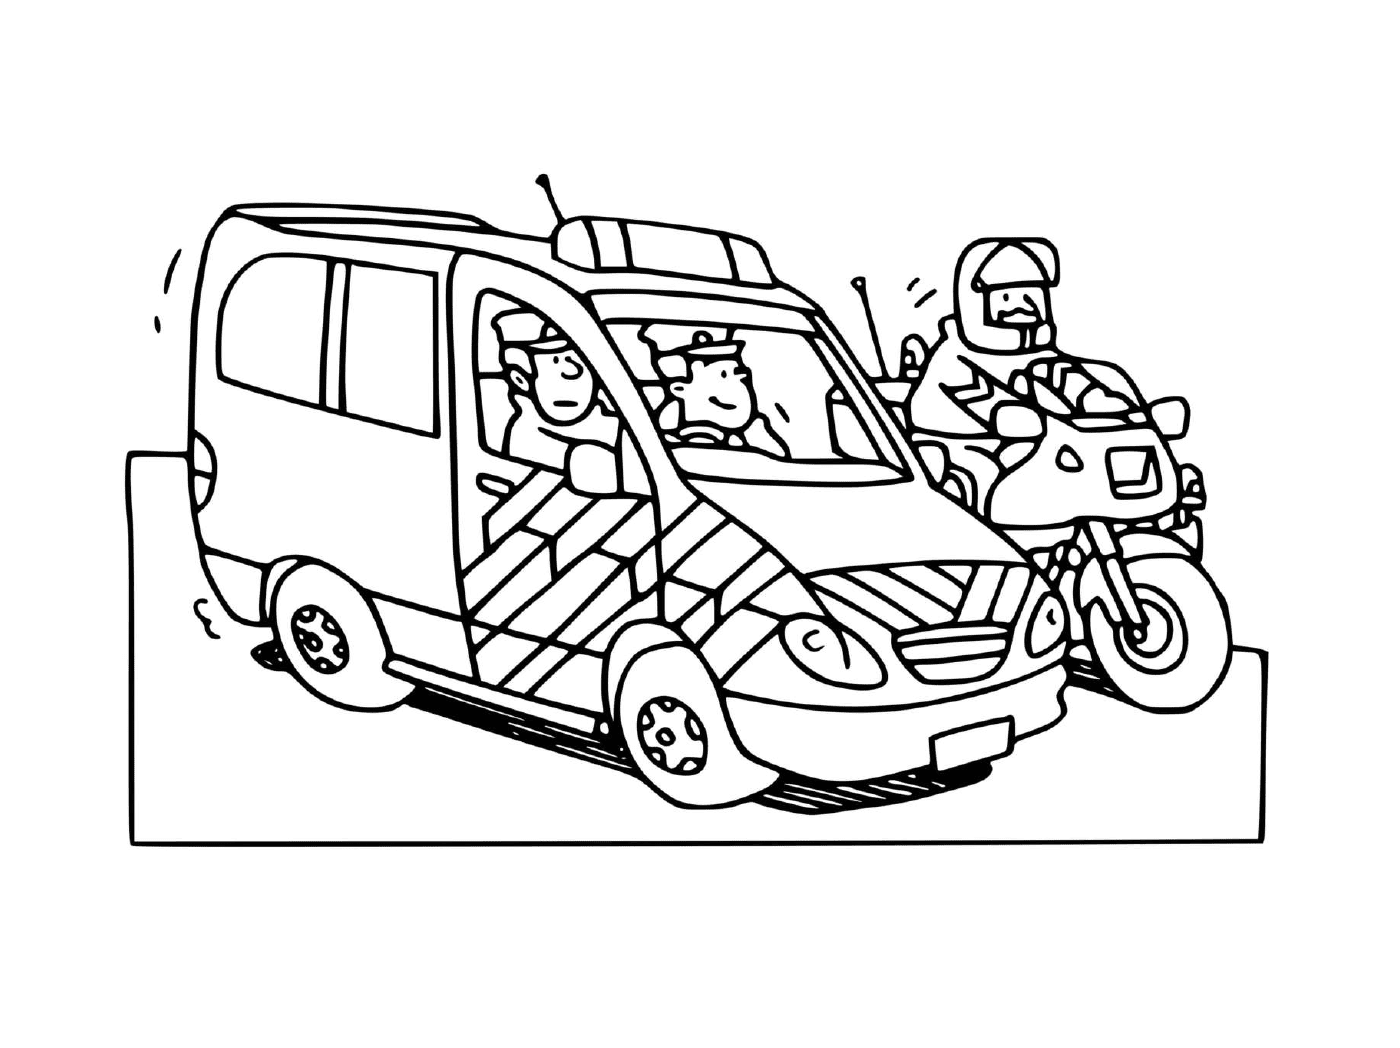  Coche de policía francés con motocicleta 